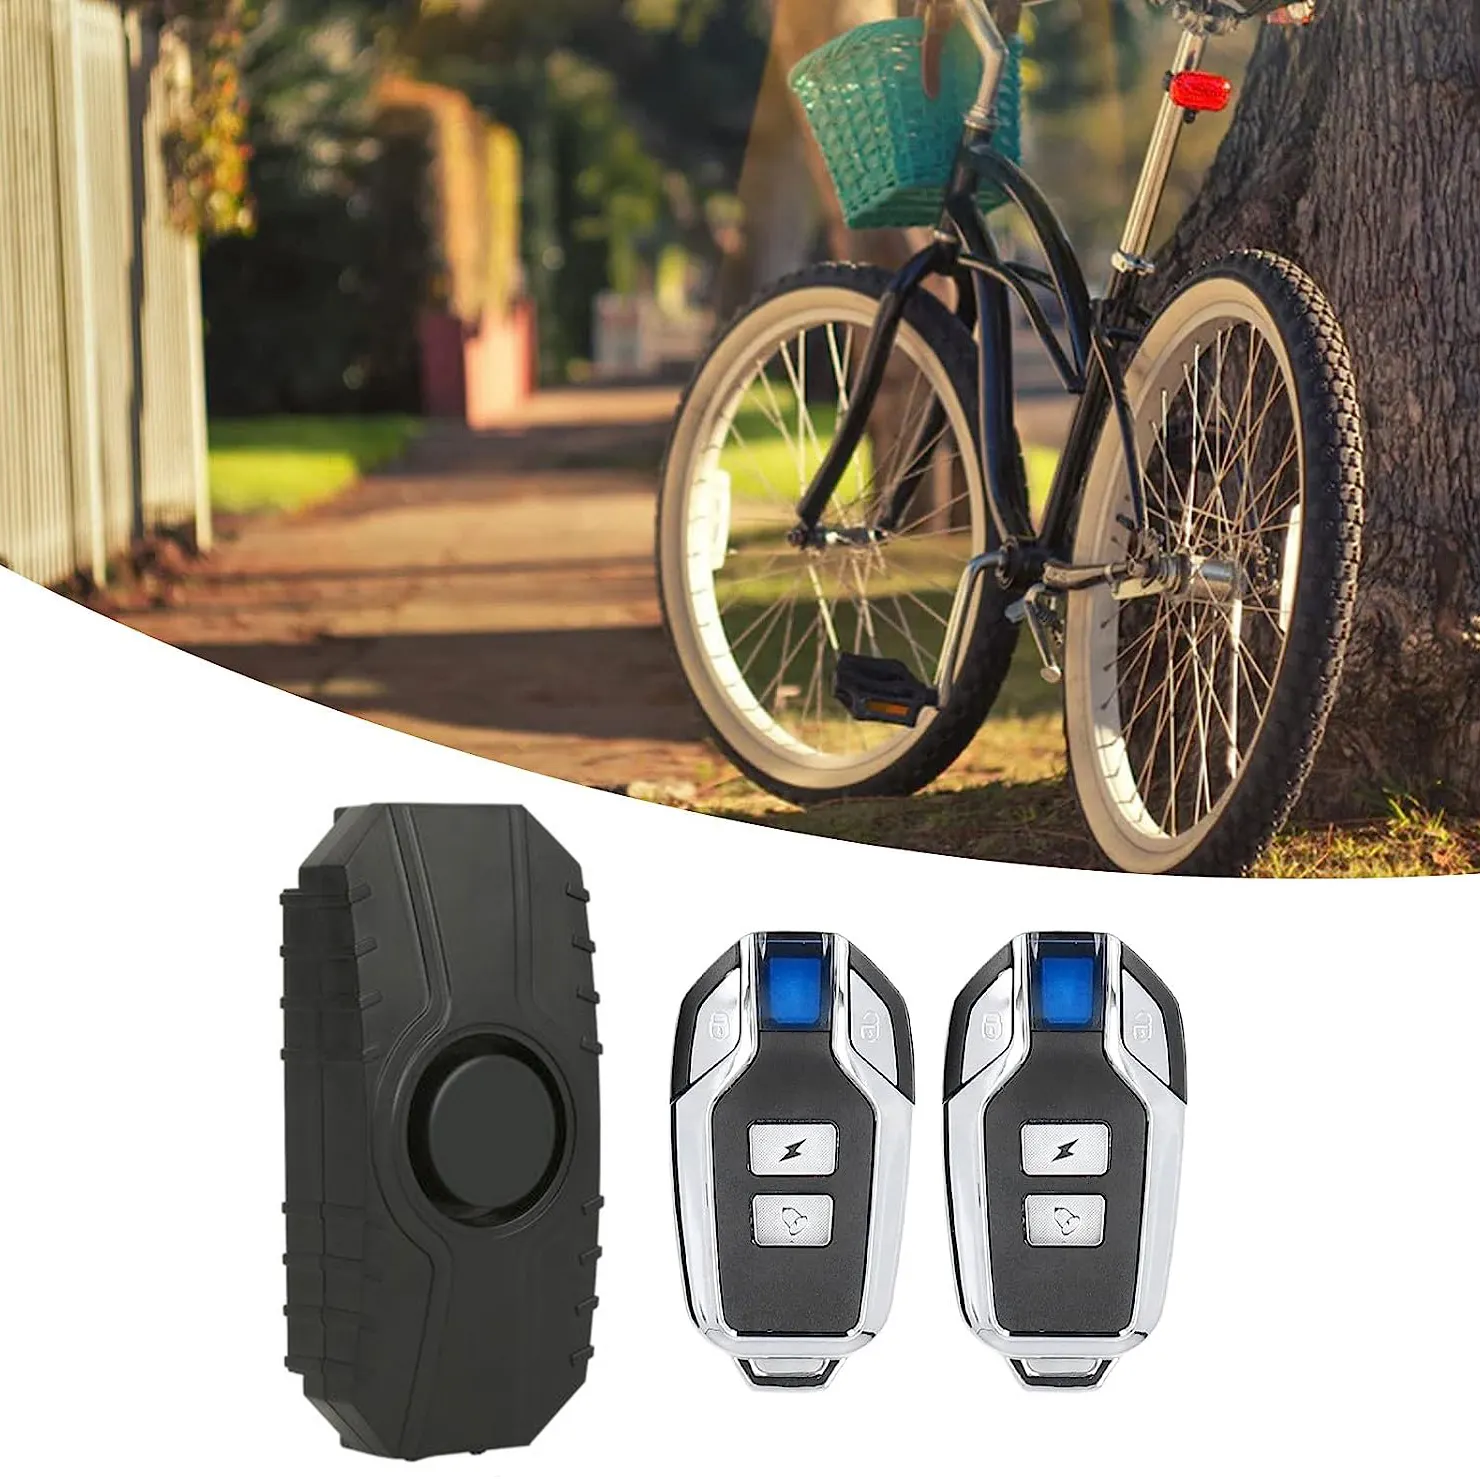 Pil tipi 113dB kablosuz anti-hırsızlık uzaktan kumanda e bisiklet alarmı ile titreşimli Alarm Motor döngüsü güvenlik bisiklet alarmı